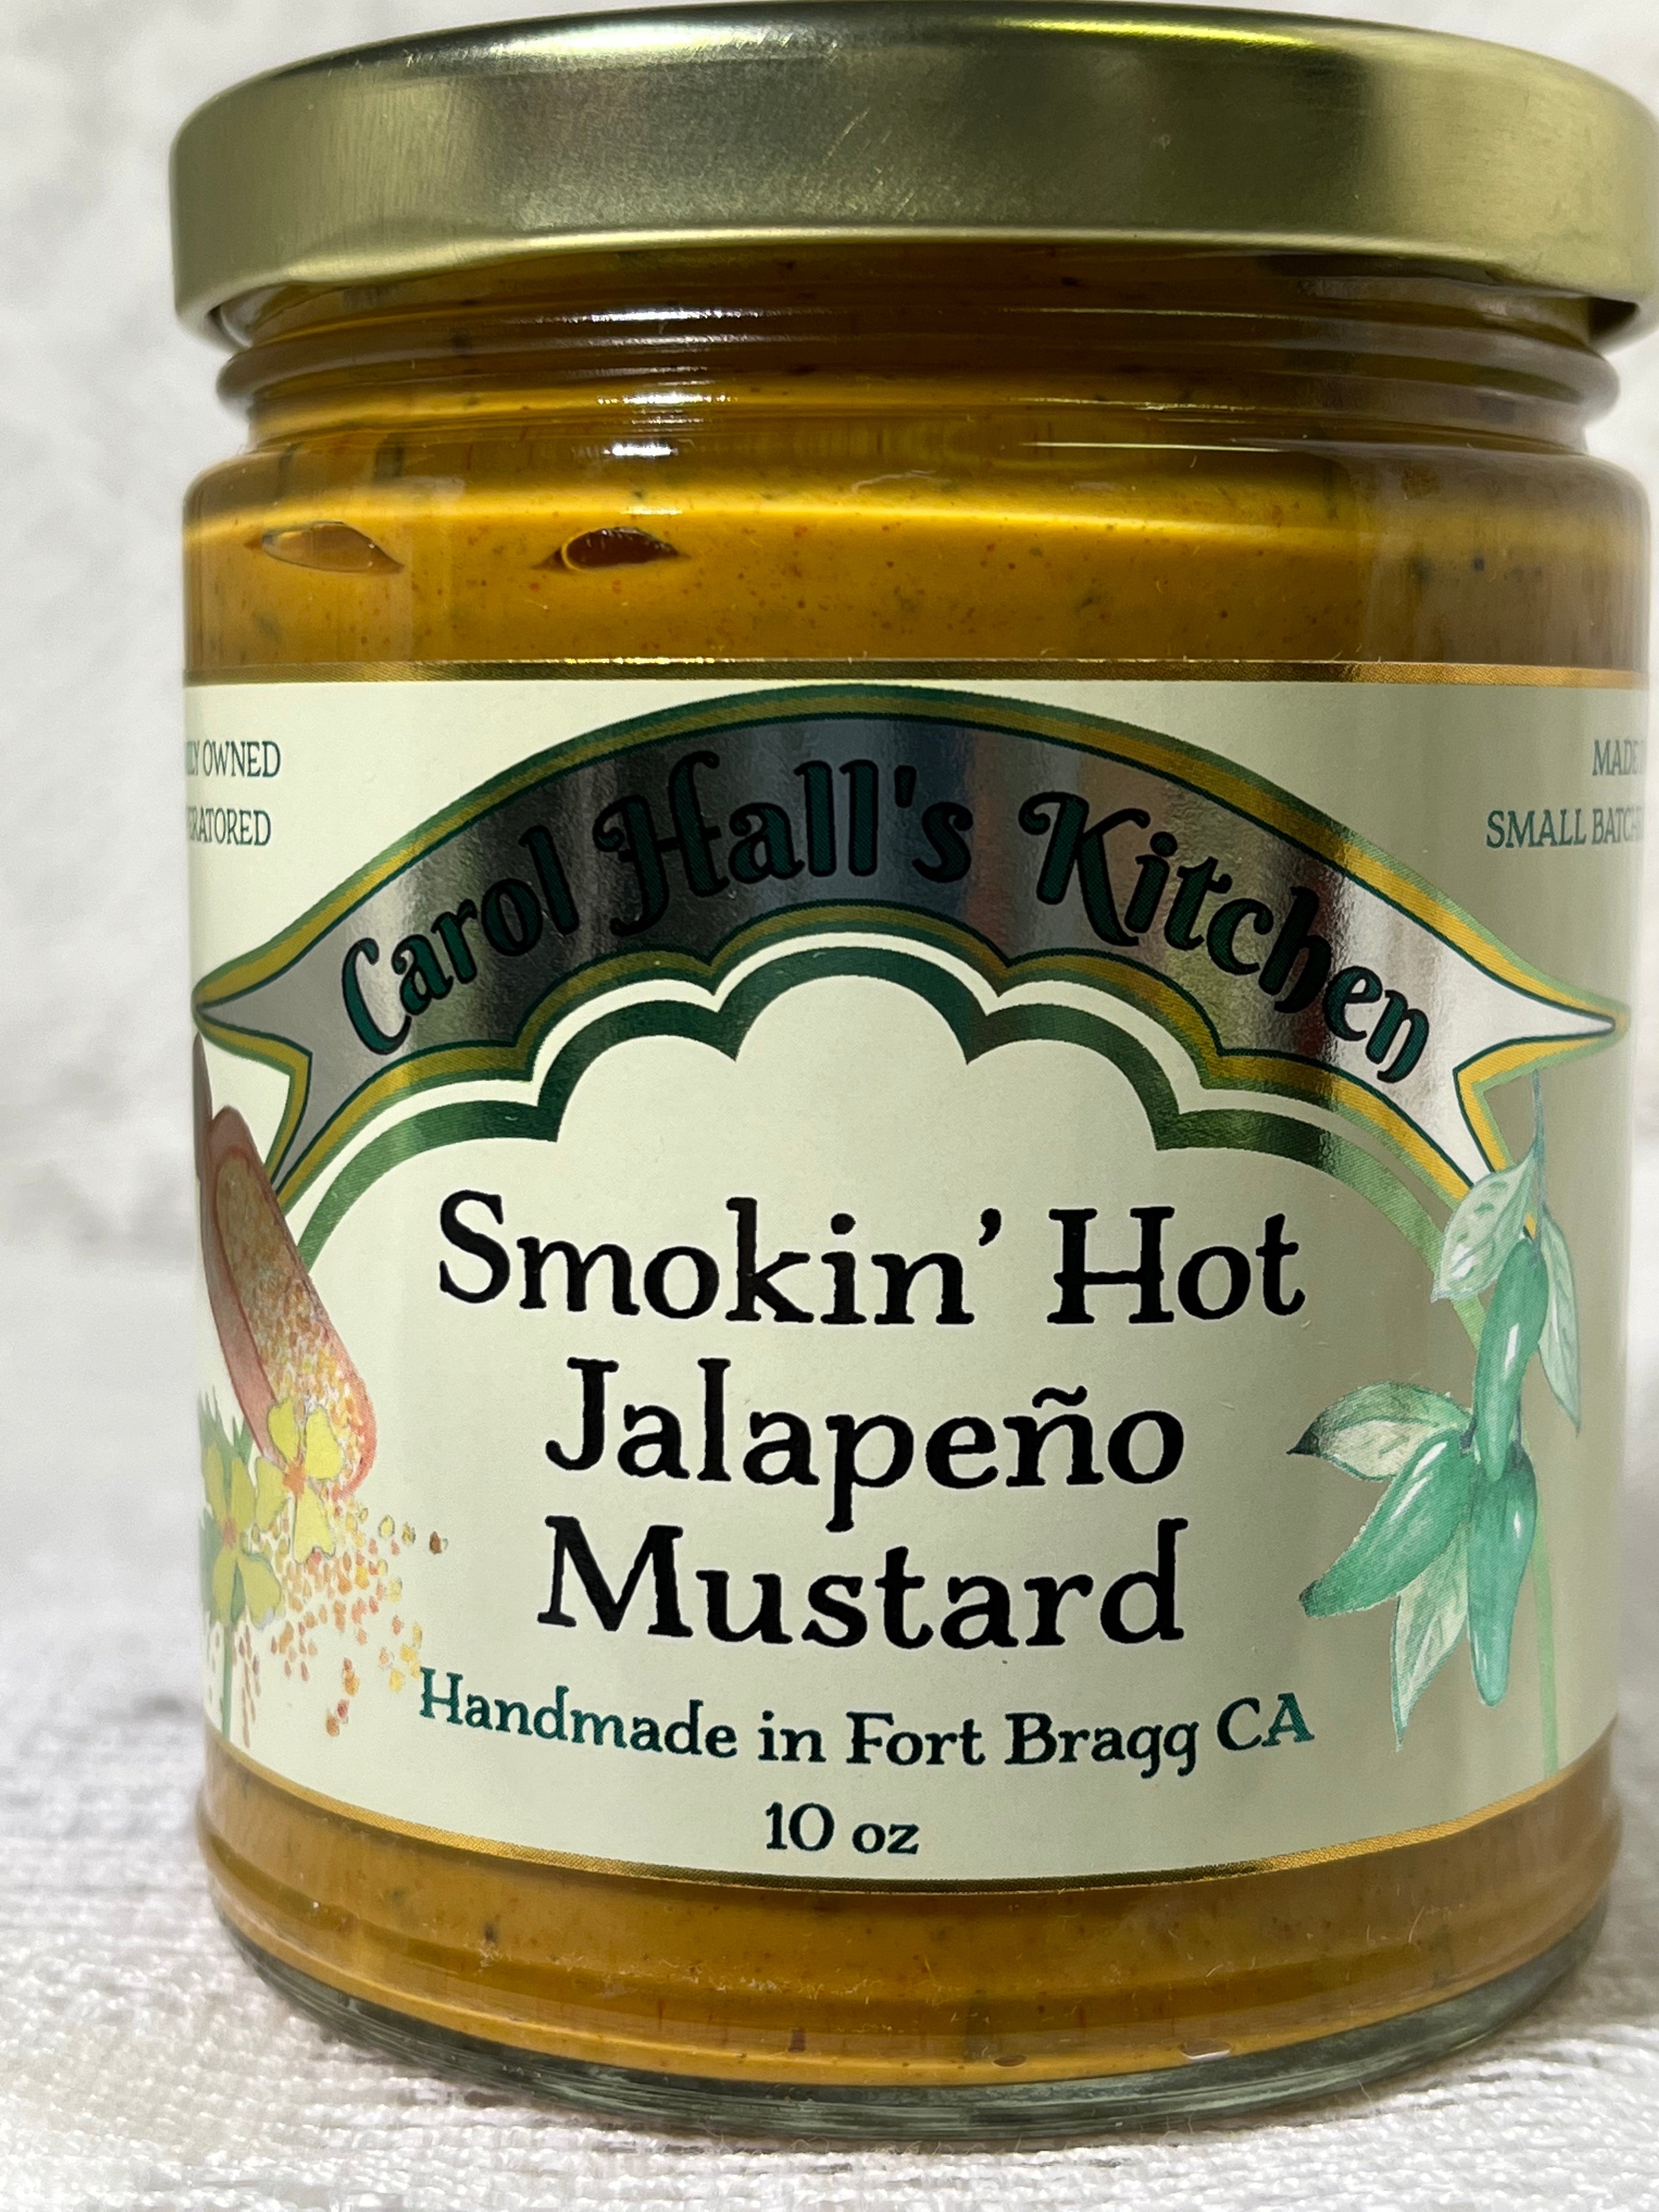 Smokin' Hot Jalapeno Mustard